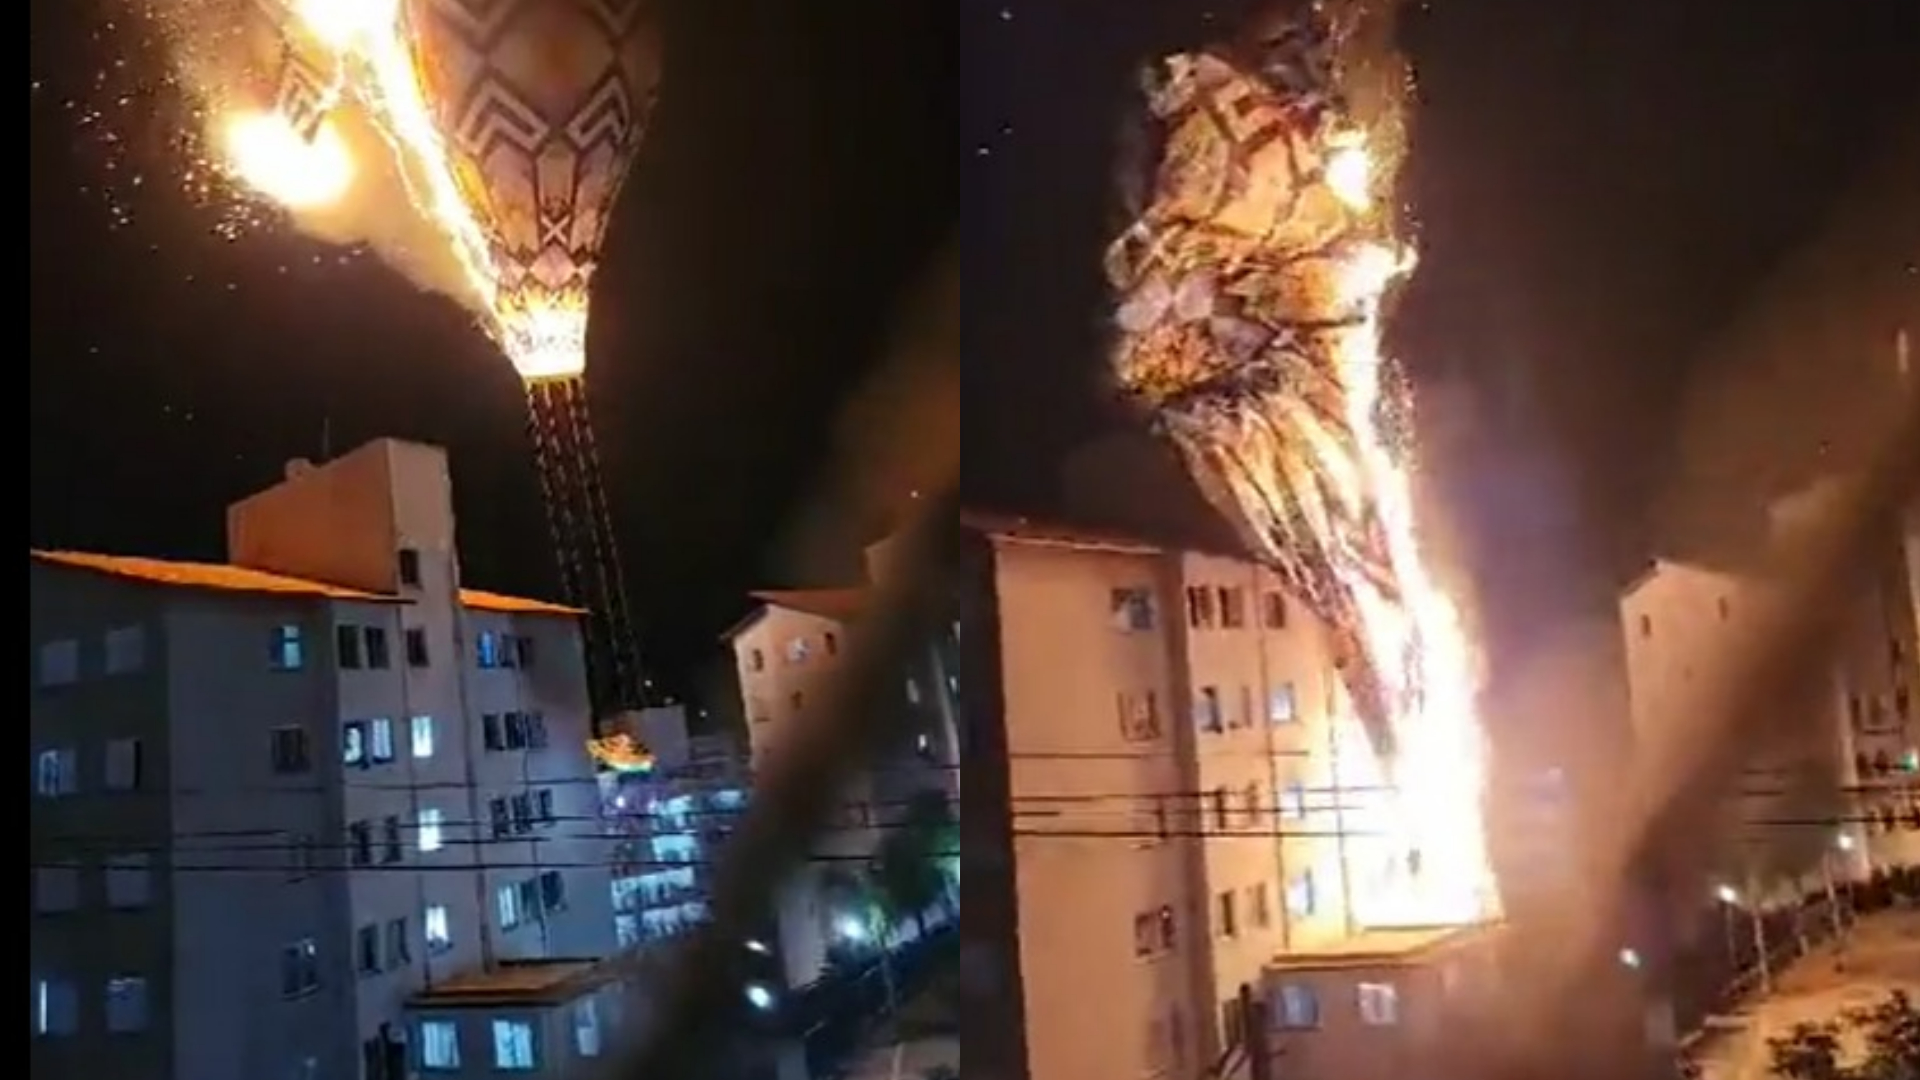 Desesperador! Vídeo mostra momento em que balão em chamas atinge prédio em São Paulo - Hugo Gloss